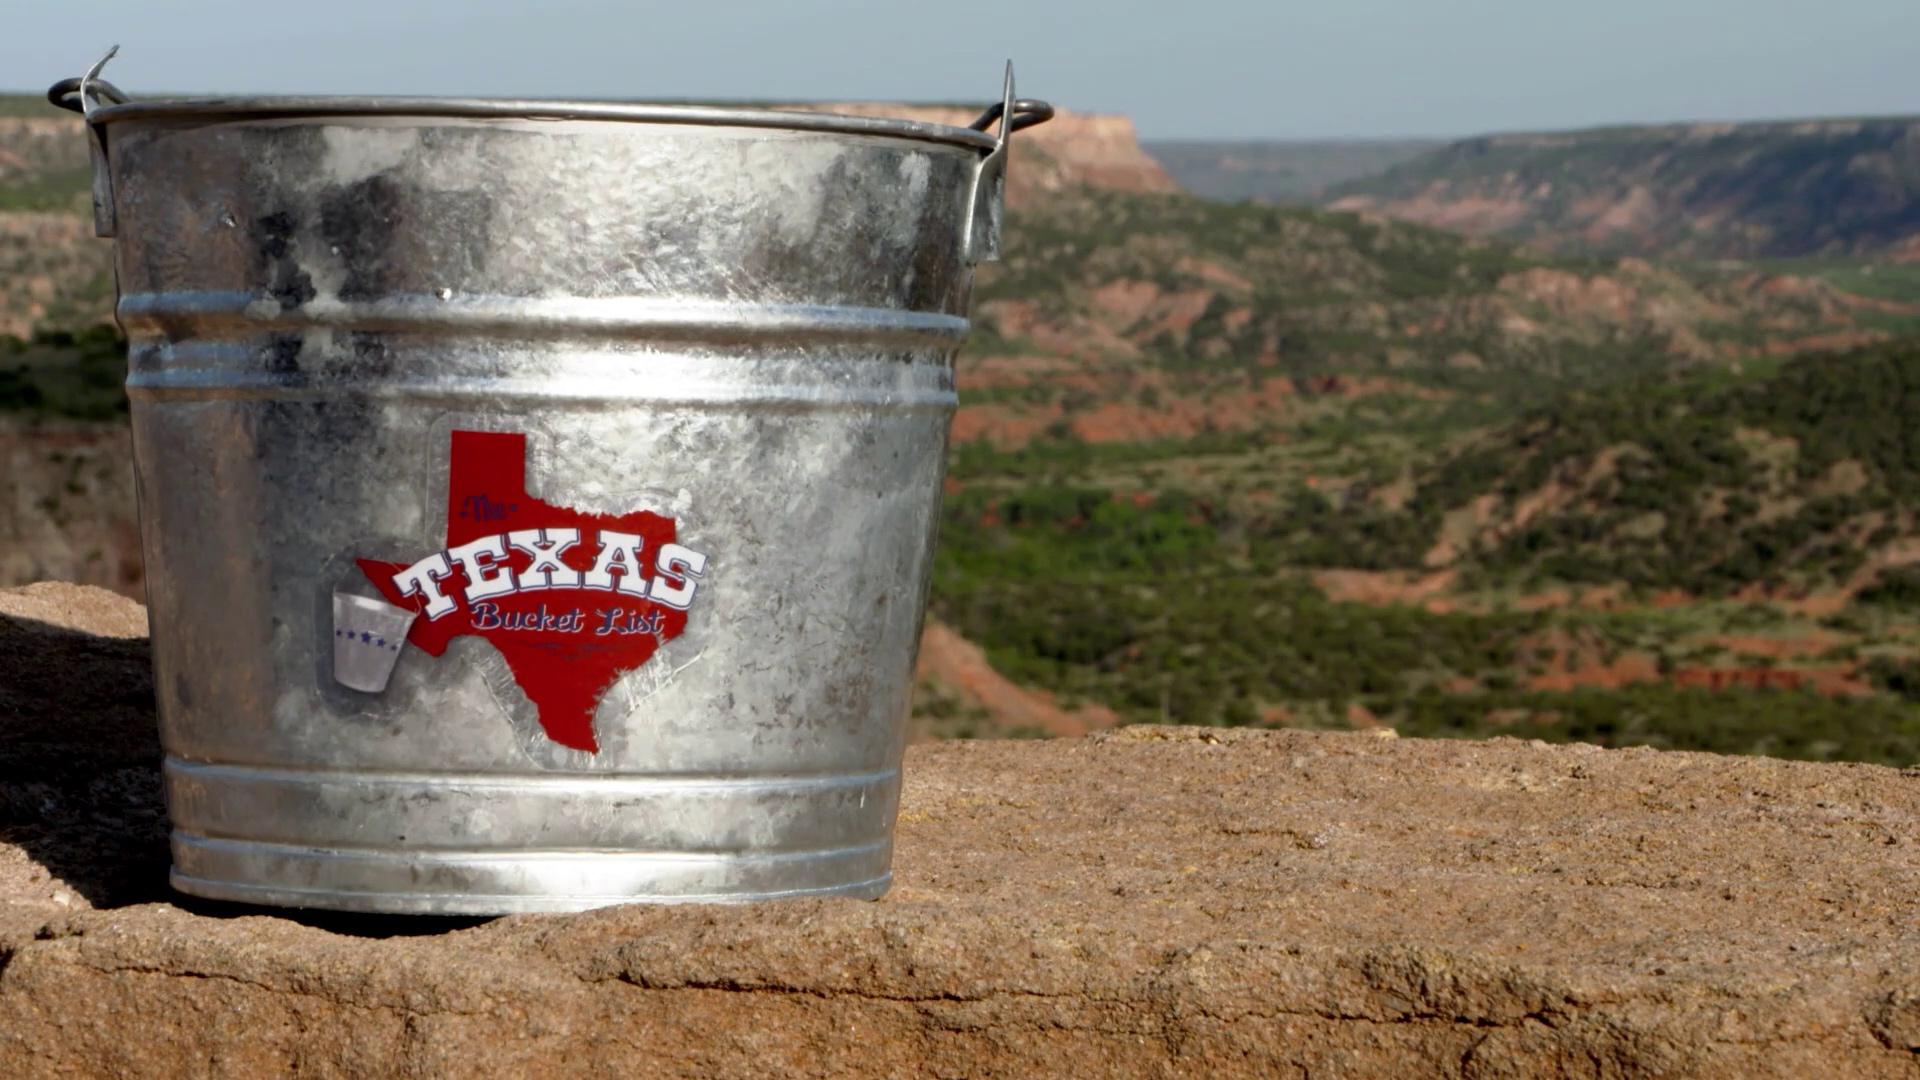 The Texas Bucket List logo